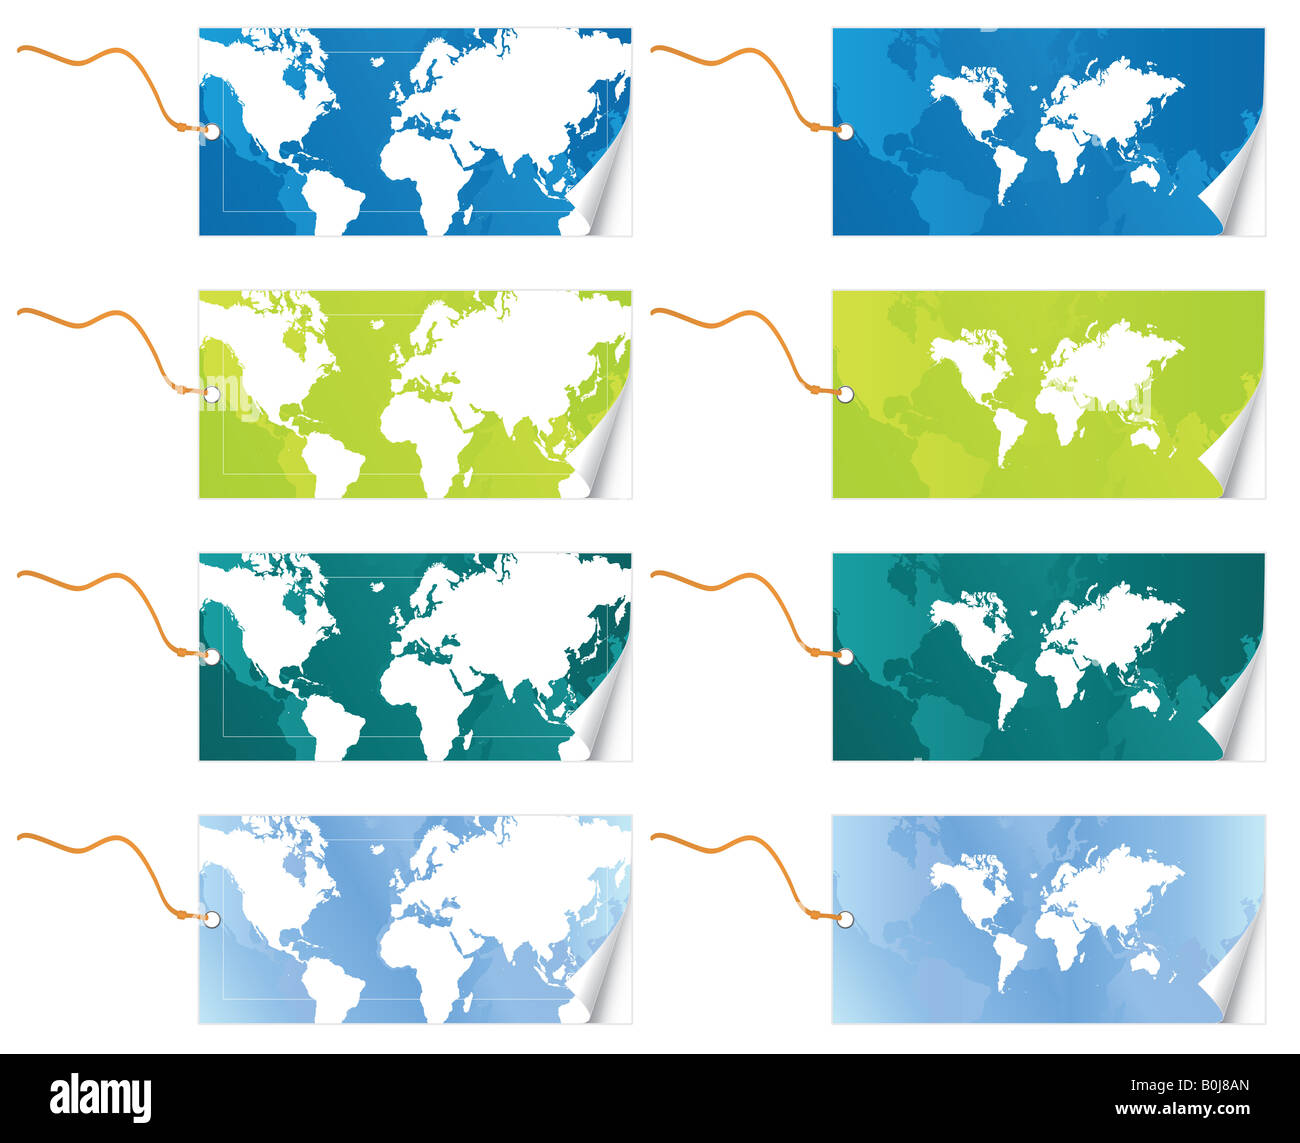 Vektor-Illustration von zwei verschiedenen Welt Karte glatt Tags mit Leine in vier Variationen Peel Farbeffekt Stockfoto